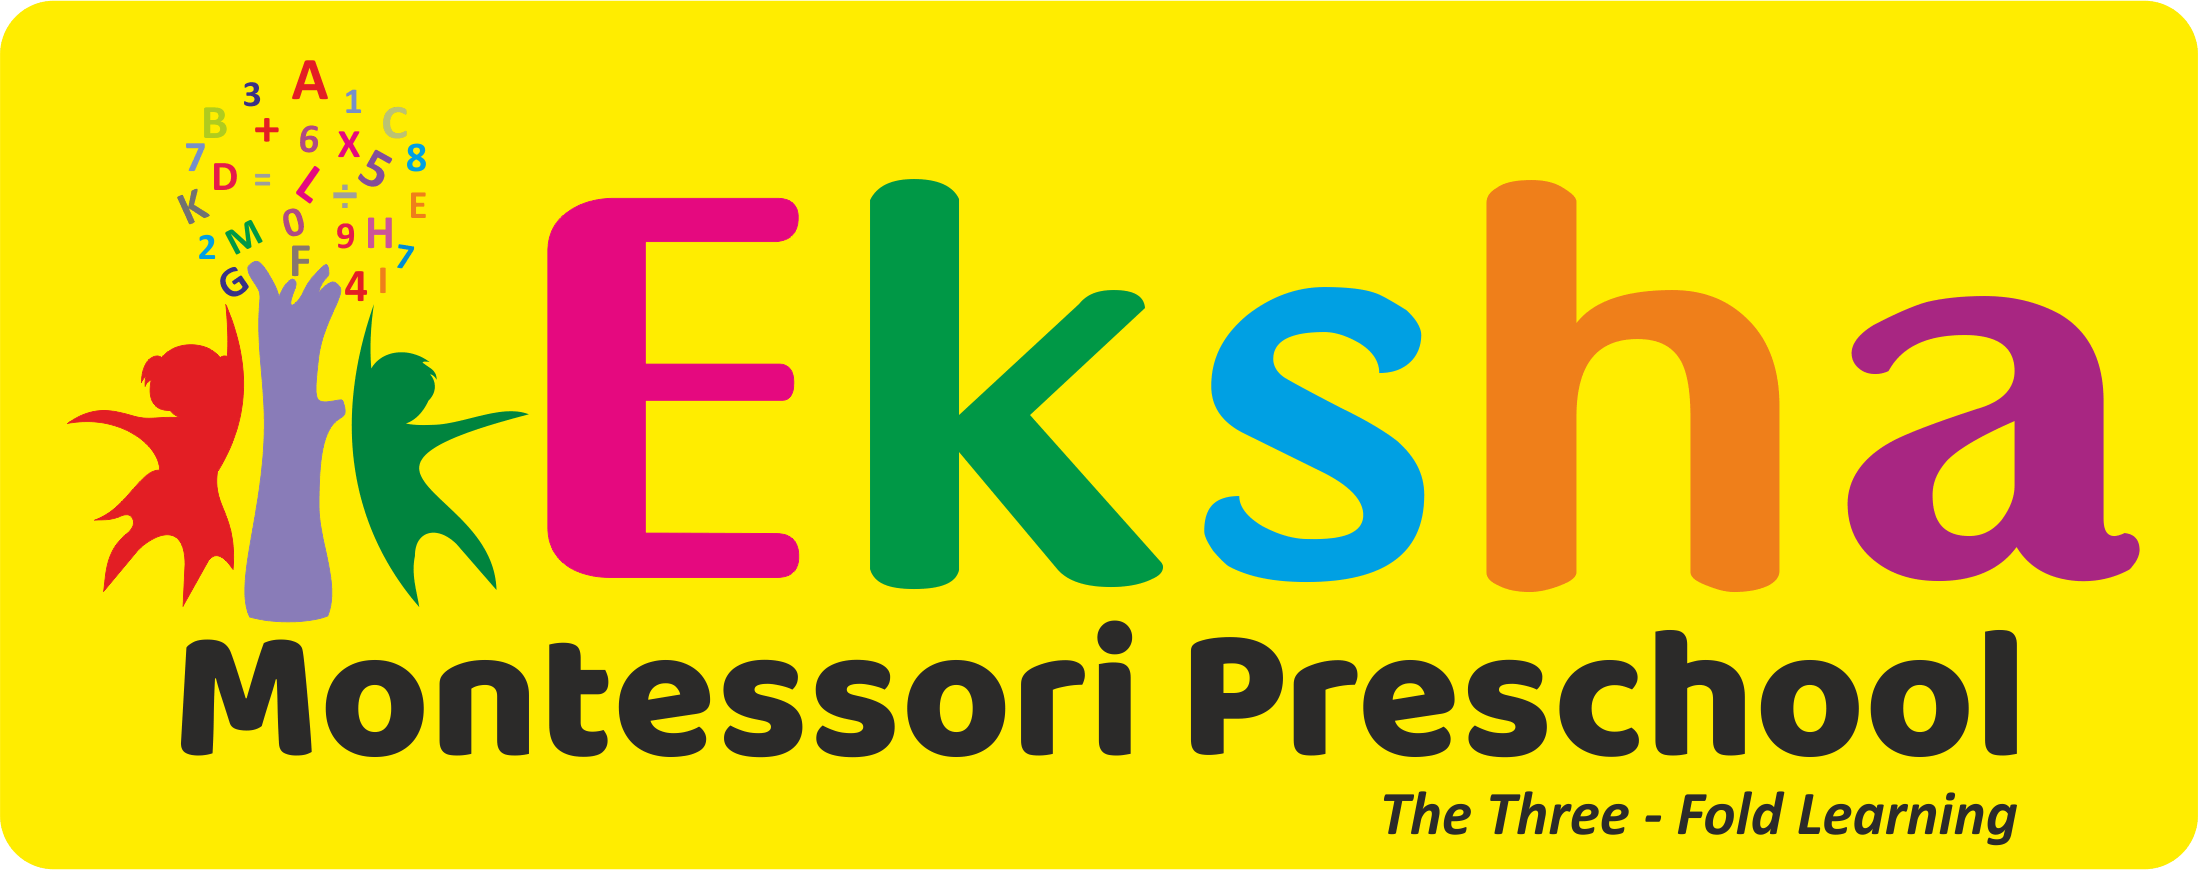 Eksha_logo